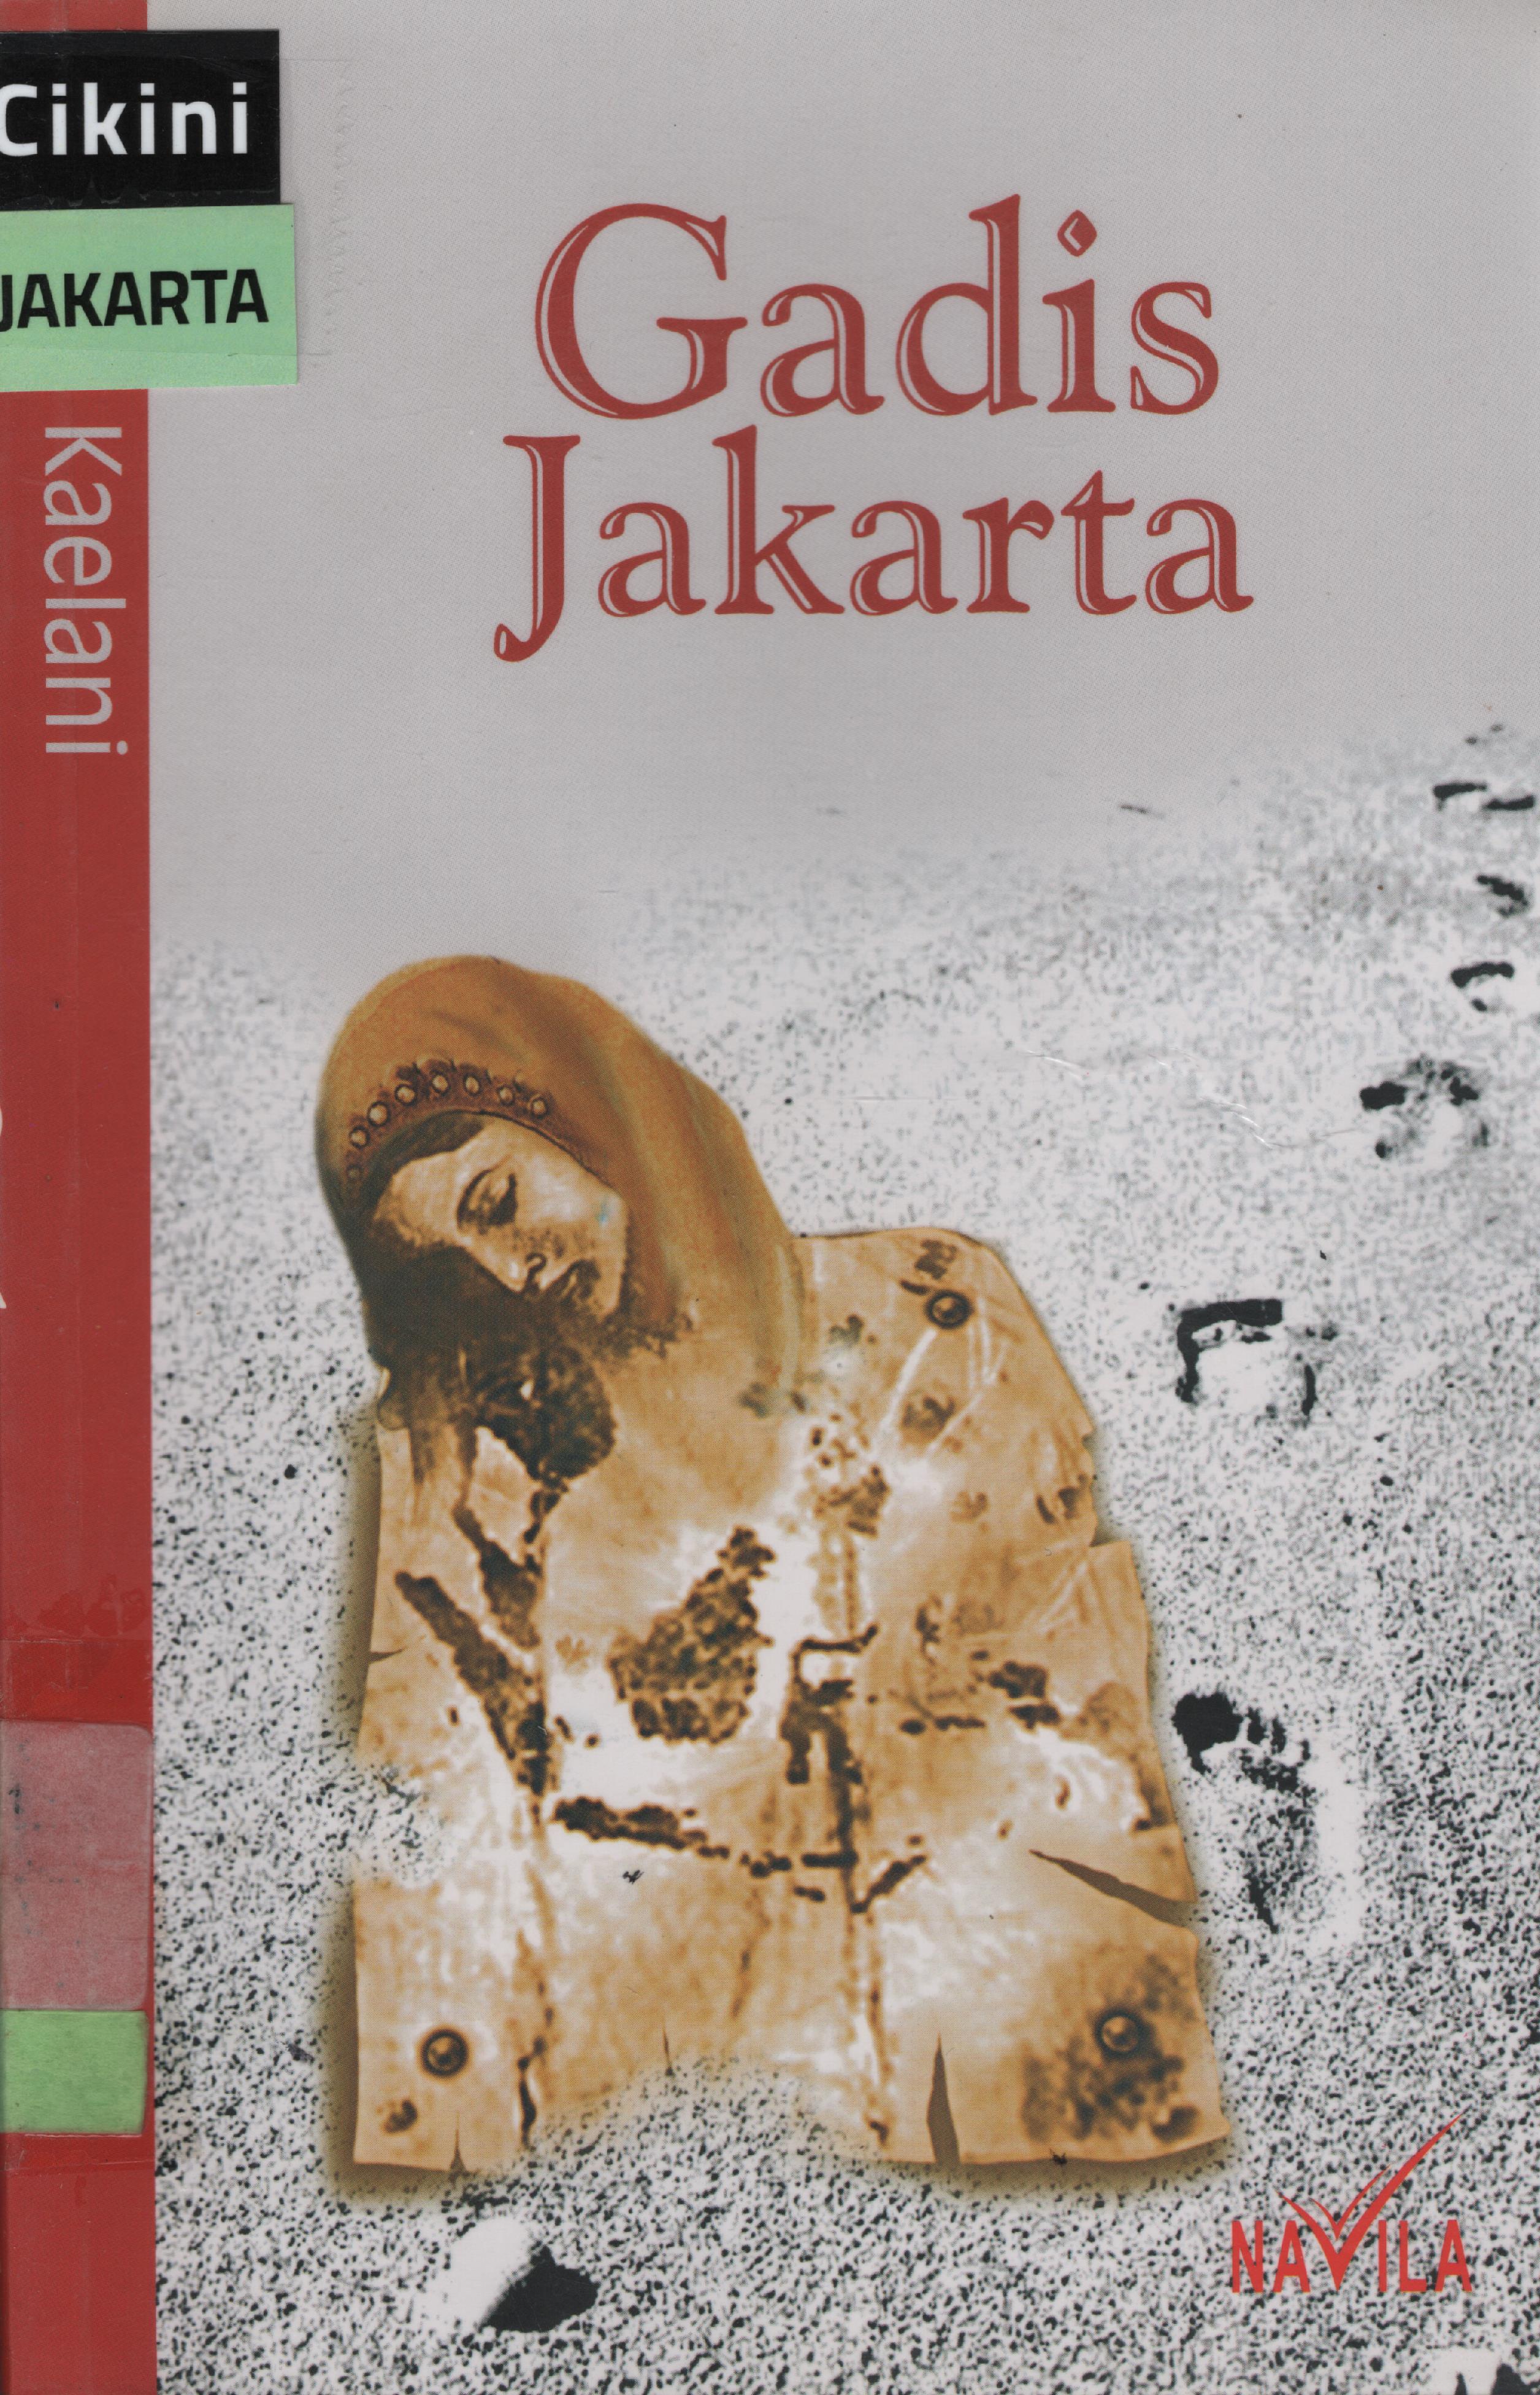 Gadis Jakarta